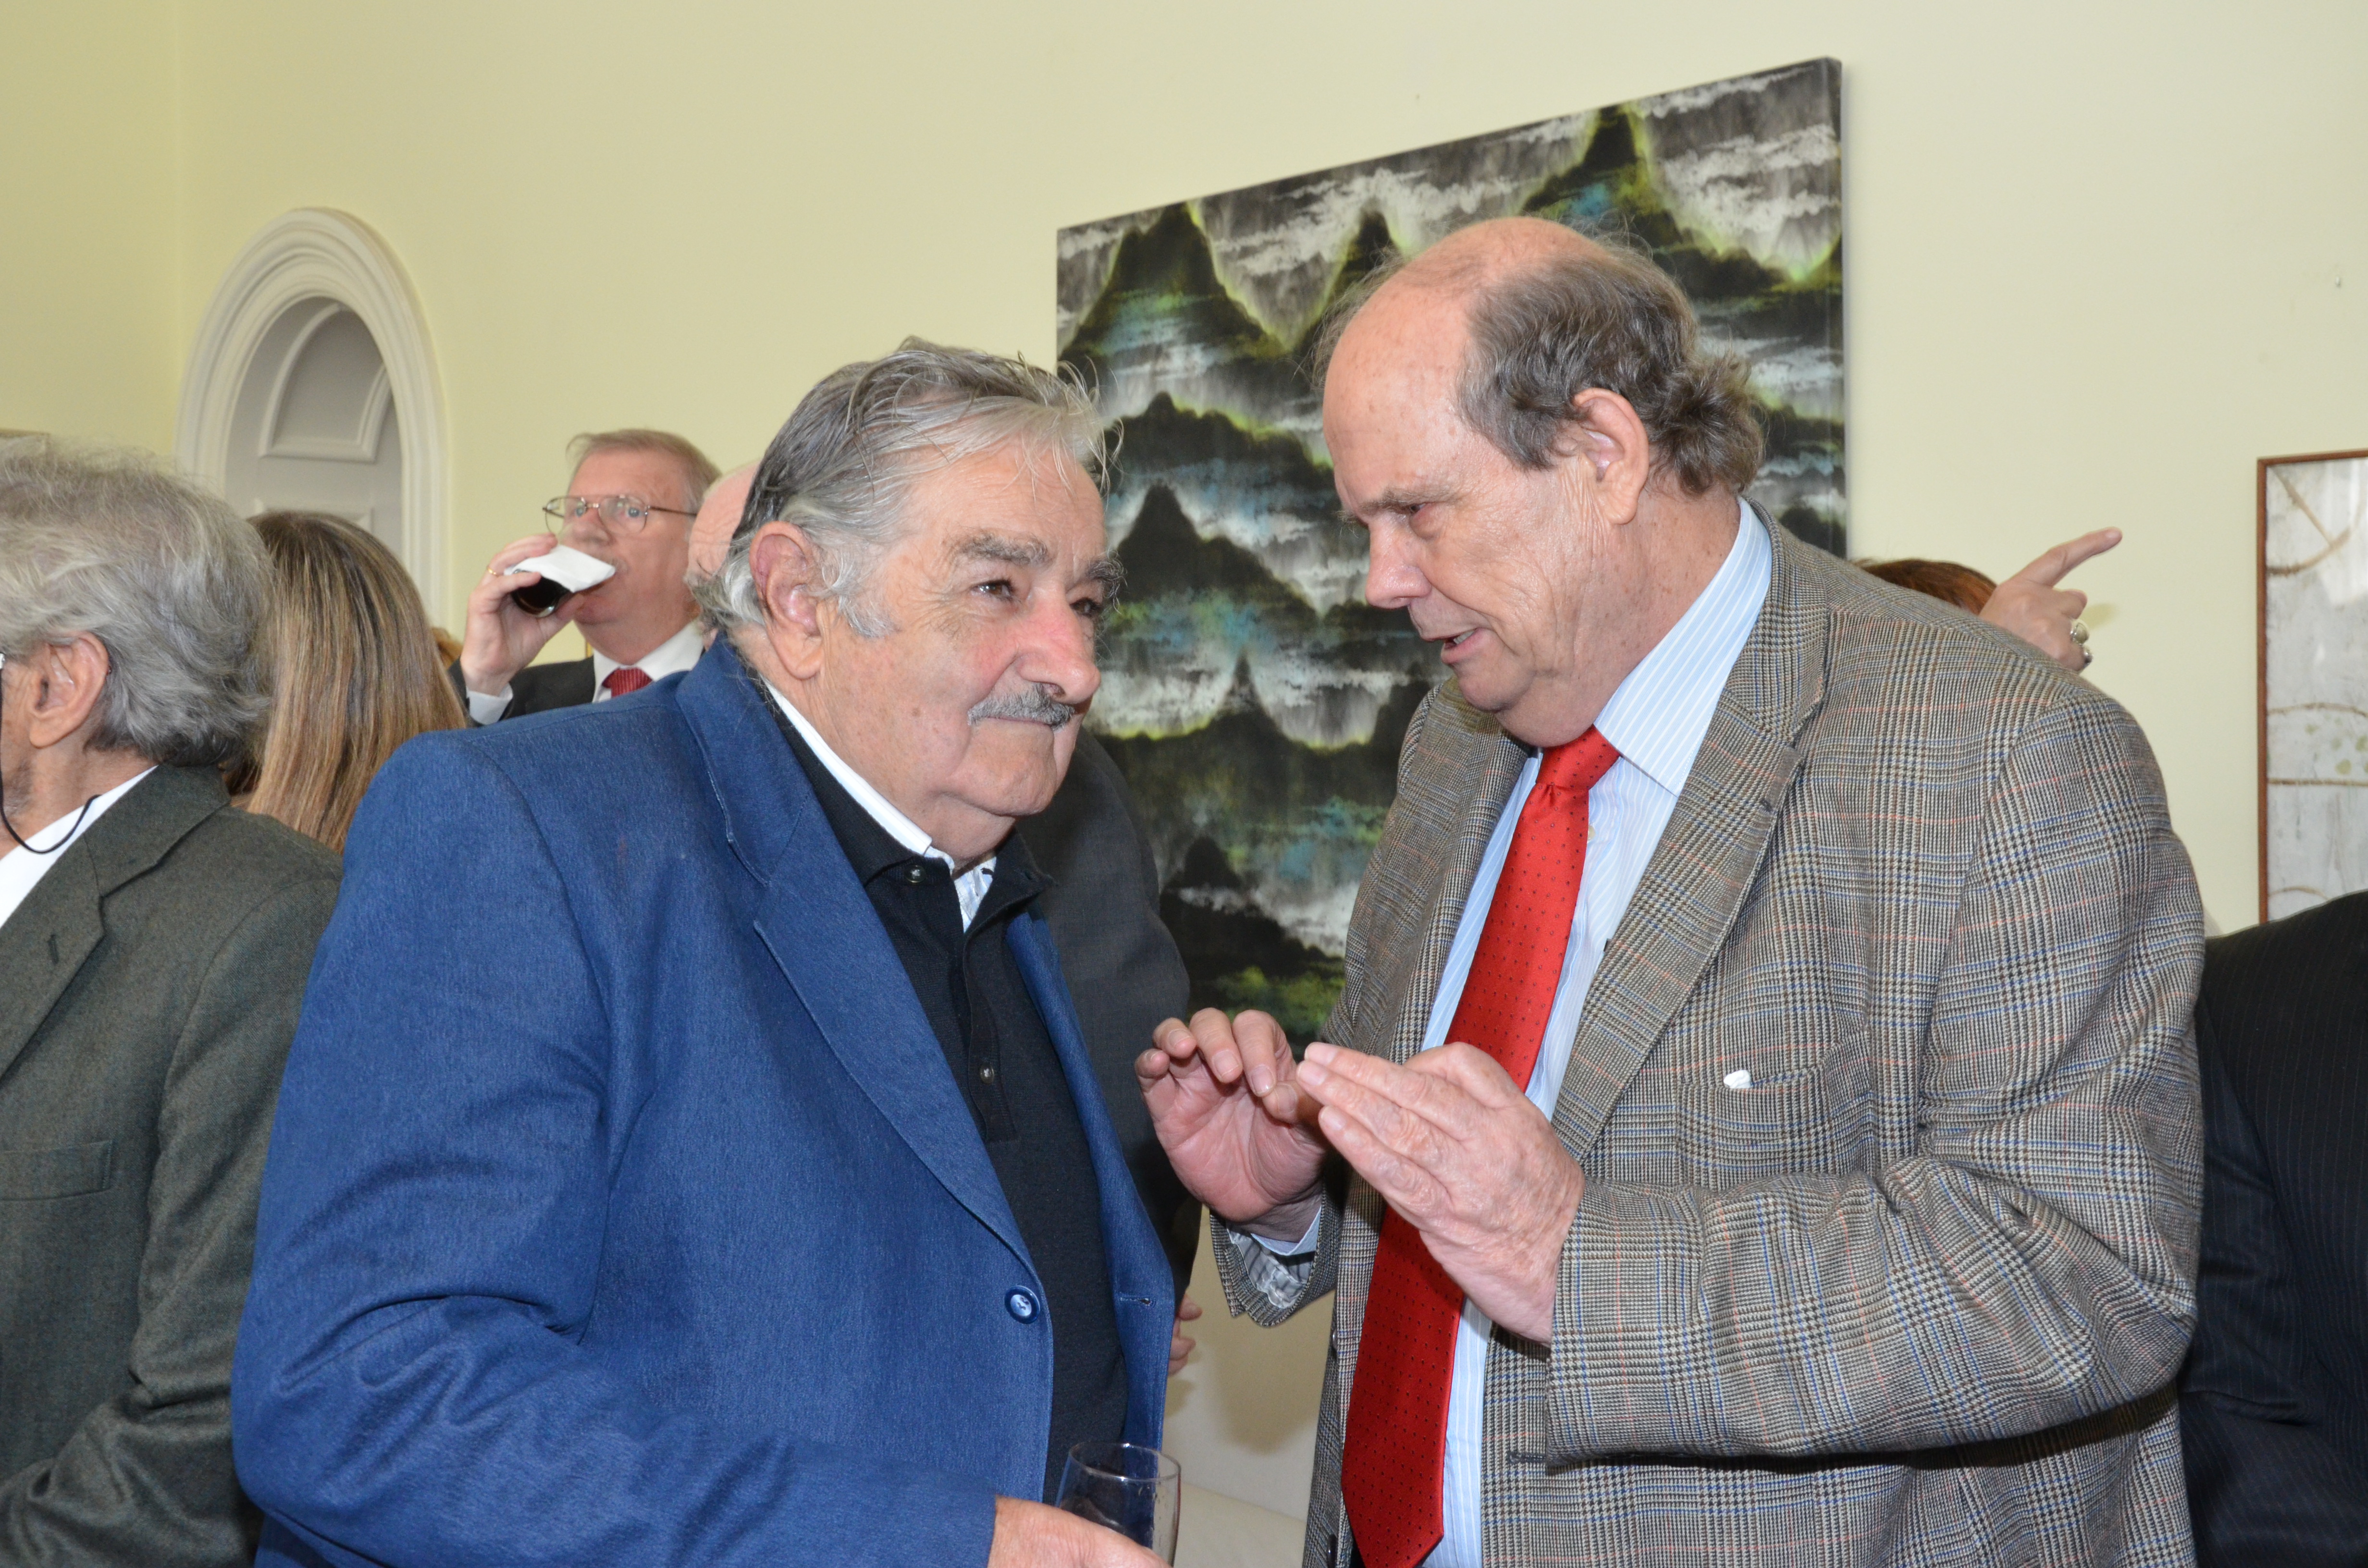 El Excelentísimo Señor Presidente de la República Oriental del Uruguay José Mujica Cordano conversa con el Representante de la Oficina de la Organización de los Estados Americanos en Uruguay, Embajador John Biehl del Río(1 de junio de 2012)